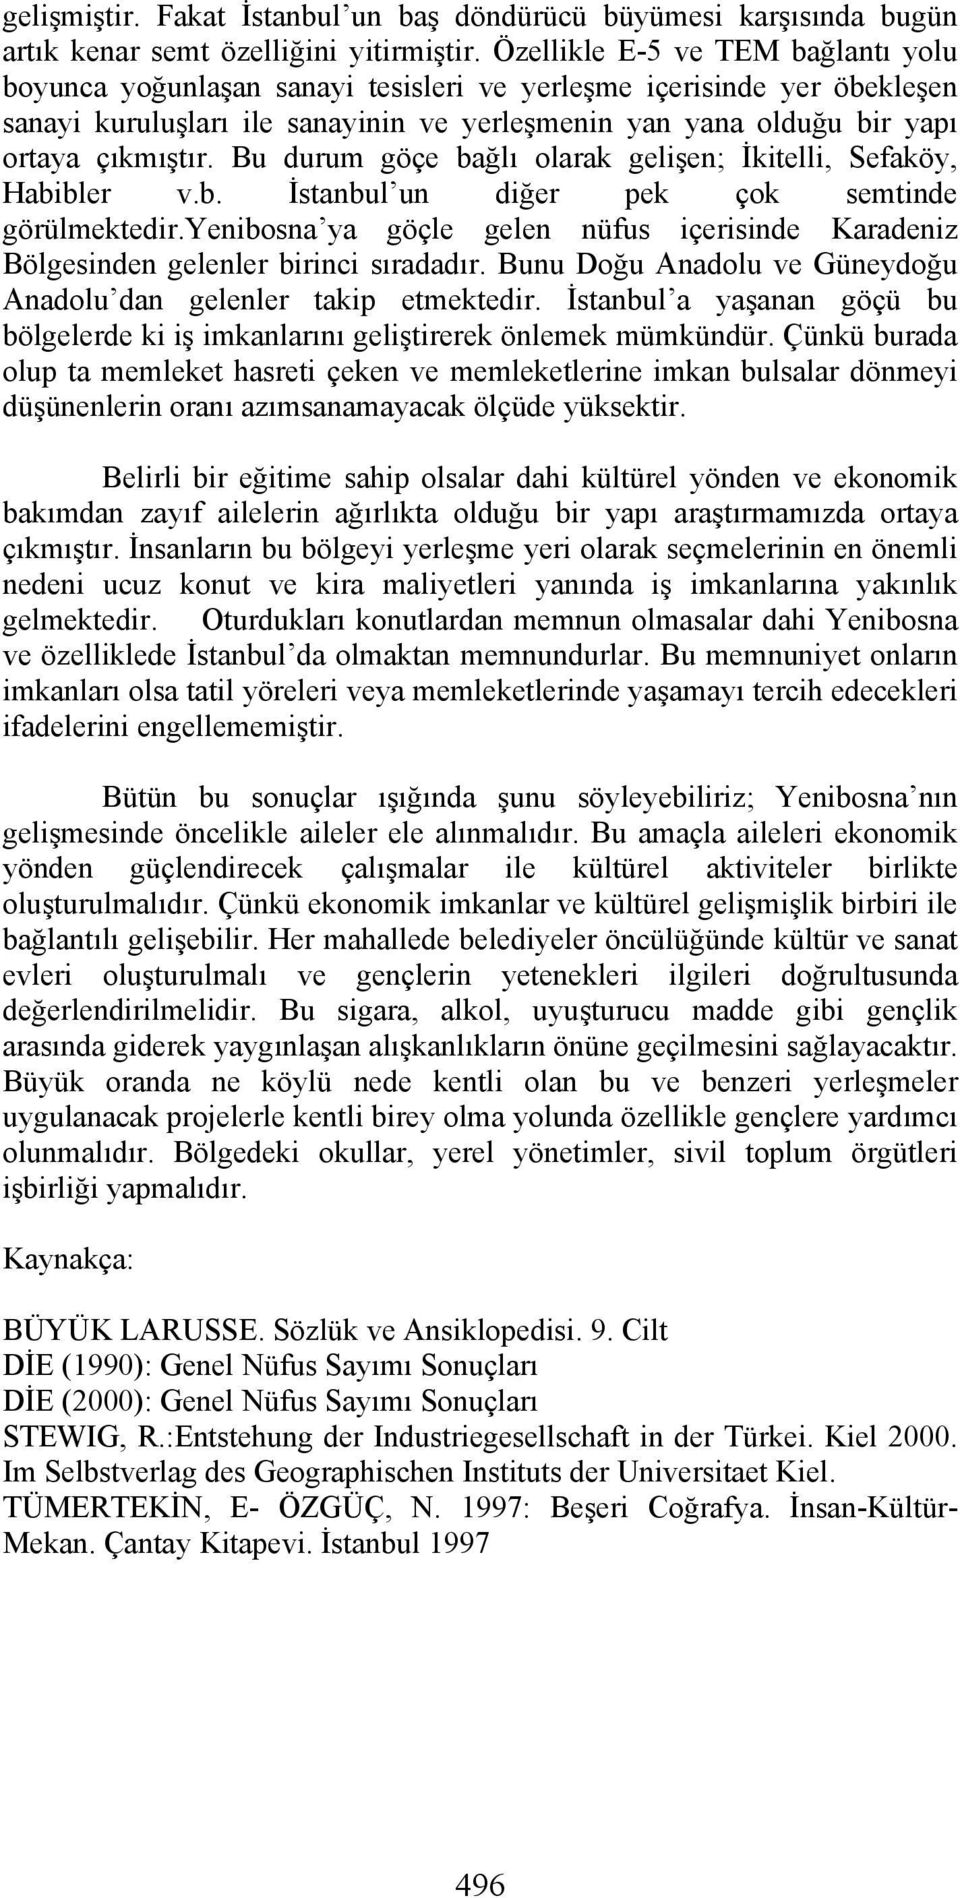 Bu durum göçe bağlı olarak gelişen; İkitelli, Sefaköy, Habibler v.b. İstanbul un diğer pek çok semtinde görülmektedir.